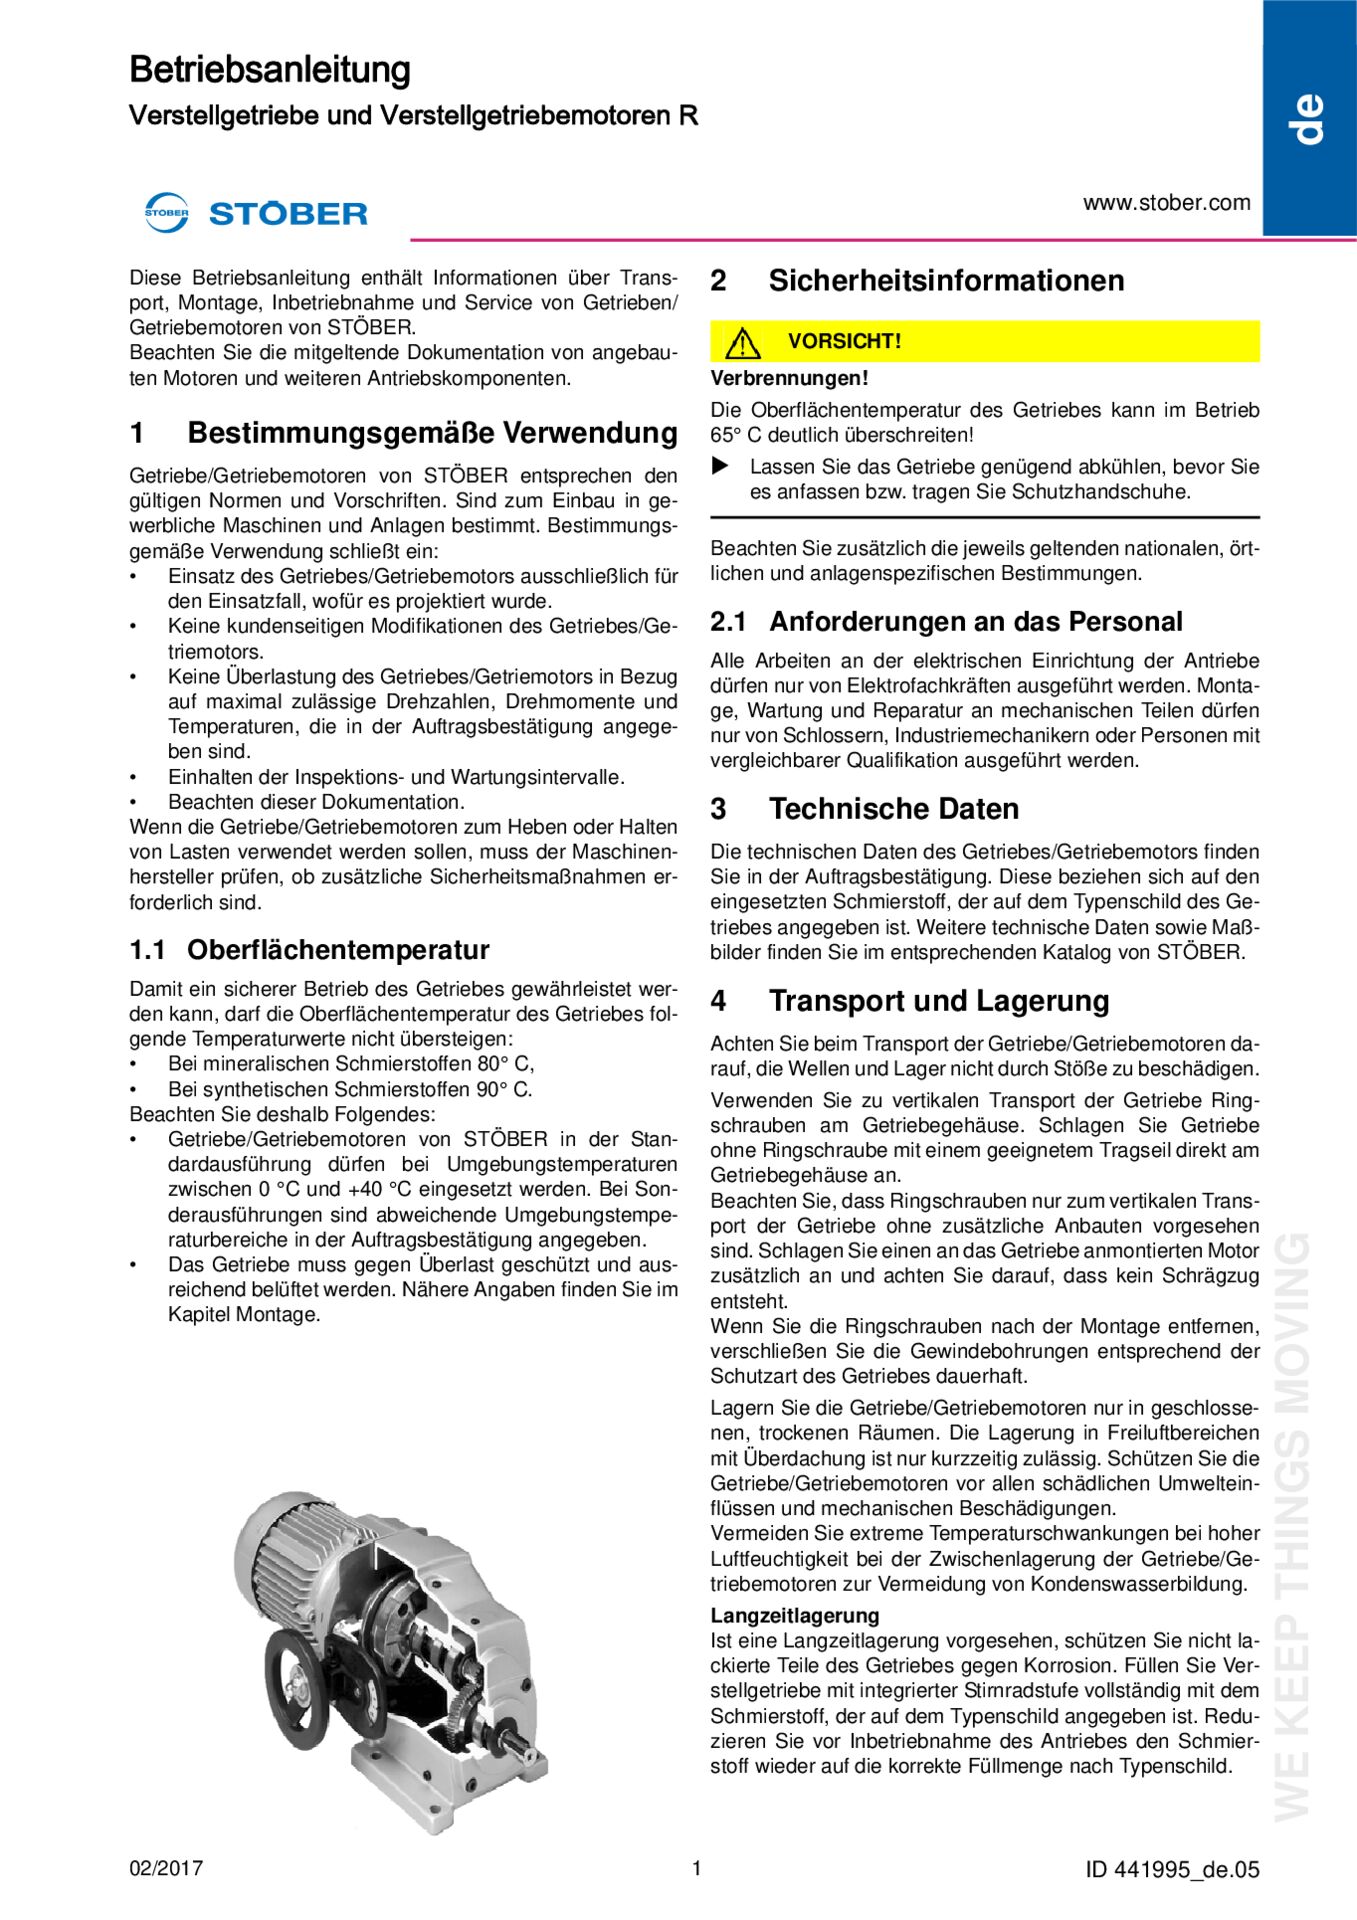 Instructions de service Variateurs et motovariateurs R